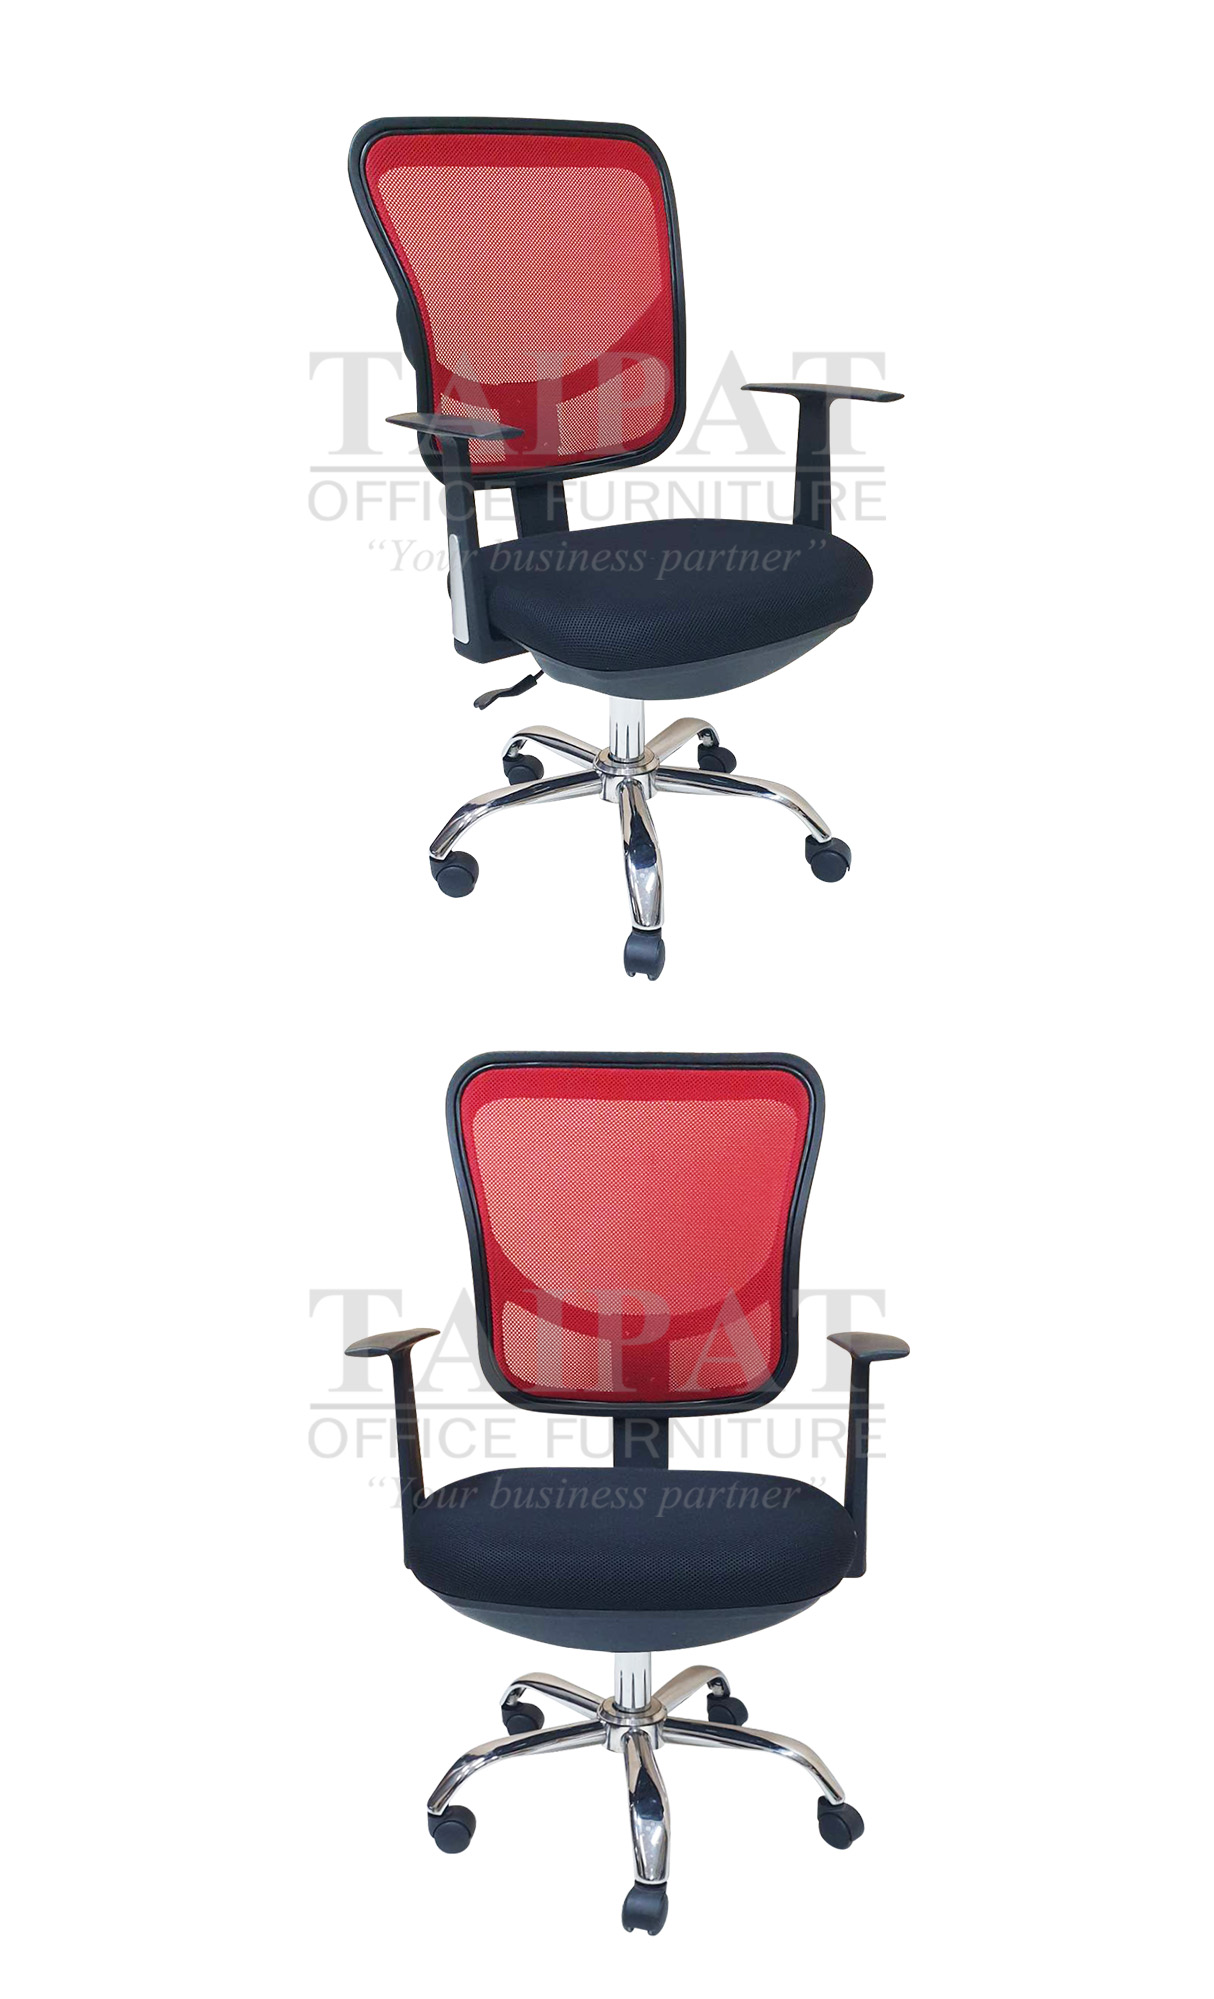 เก้าอี้สำนักงาน TPR-274